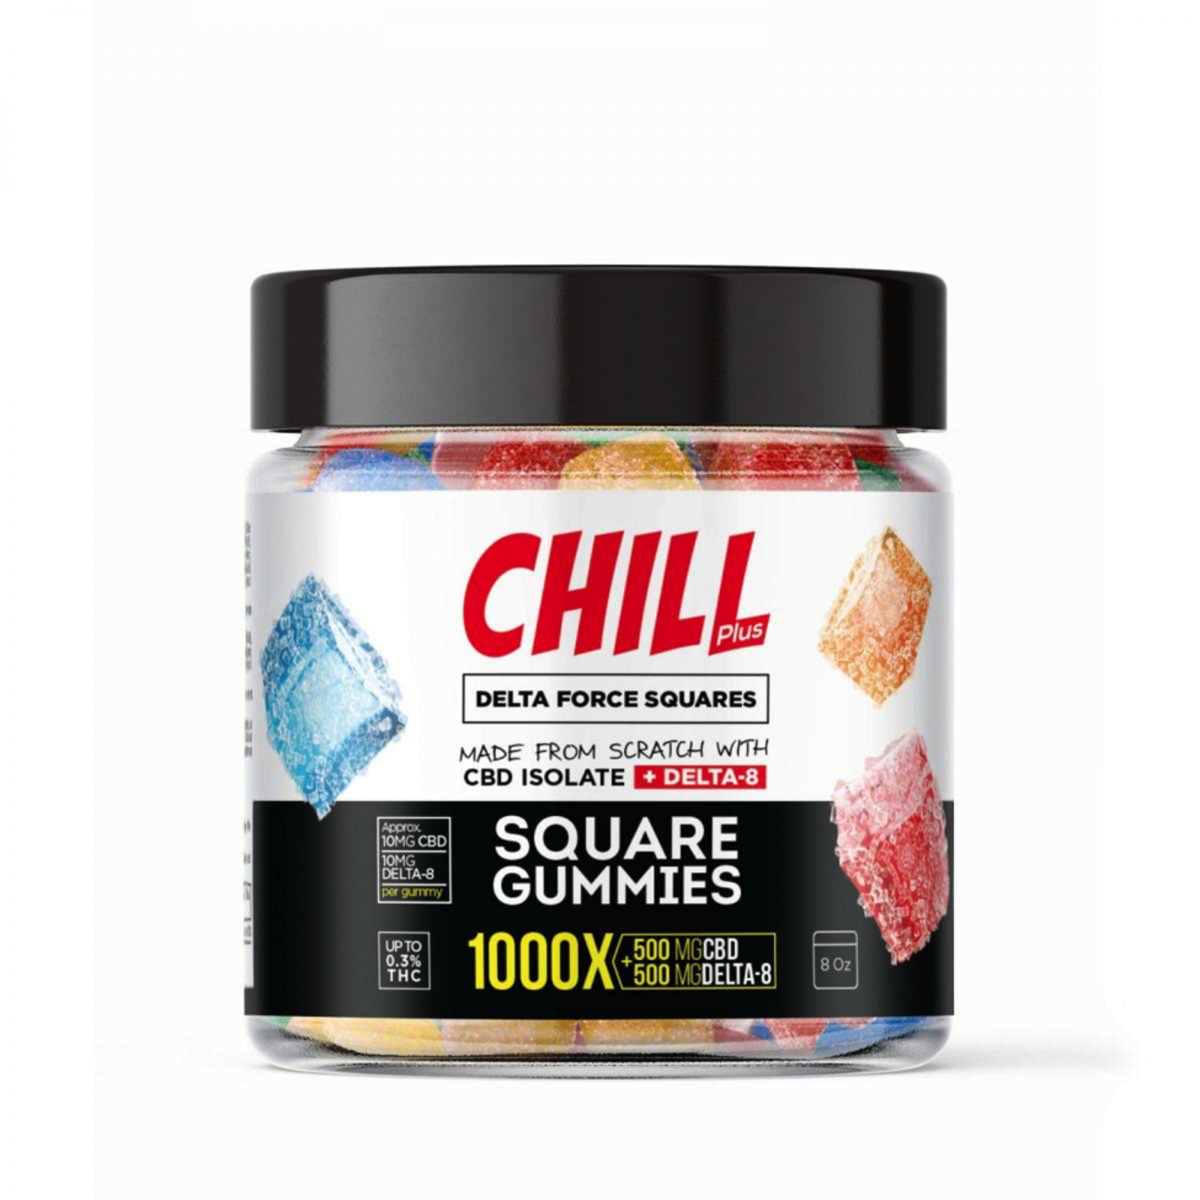 Chill Plus Delta-8 Squares Gummies – 1000x